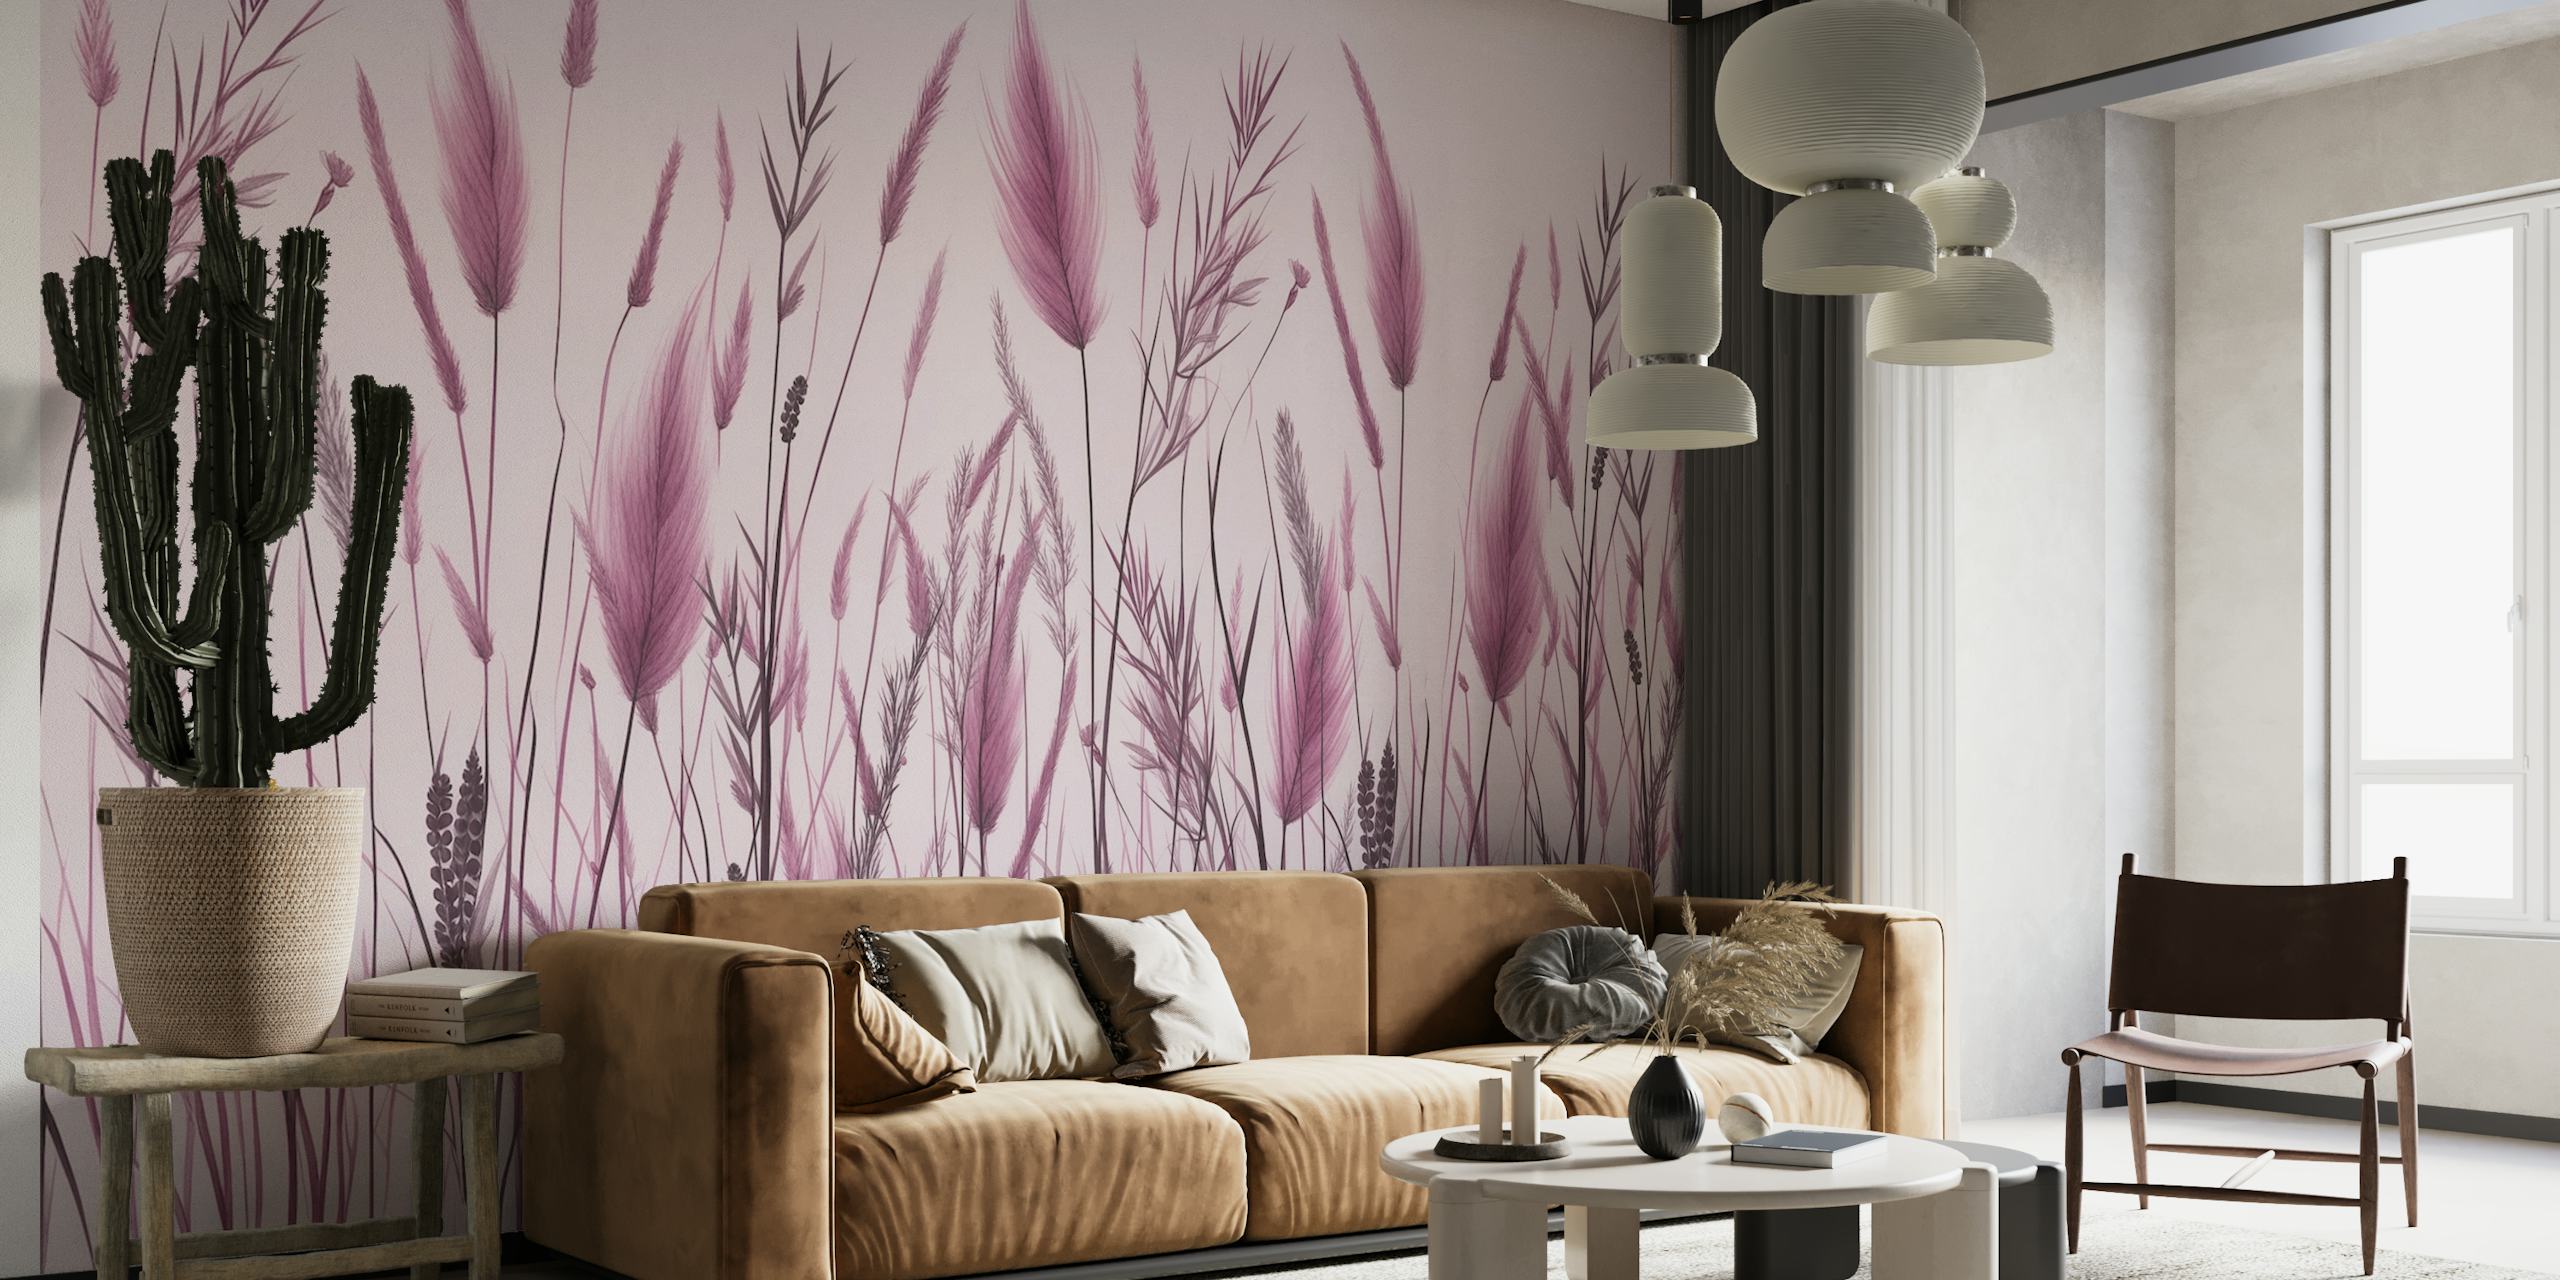 Monokromatisk pink og grå botanisk vægmaleri af vildt græs